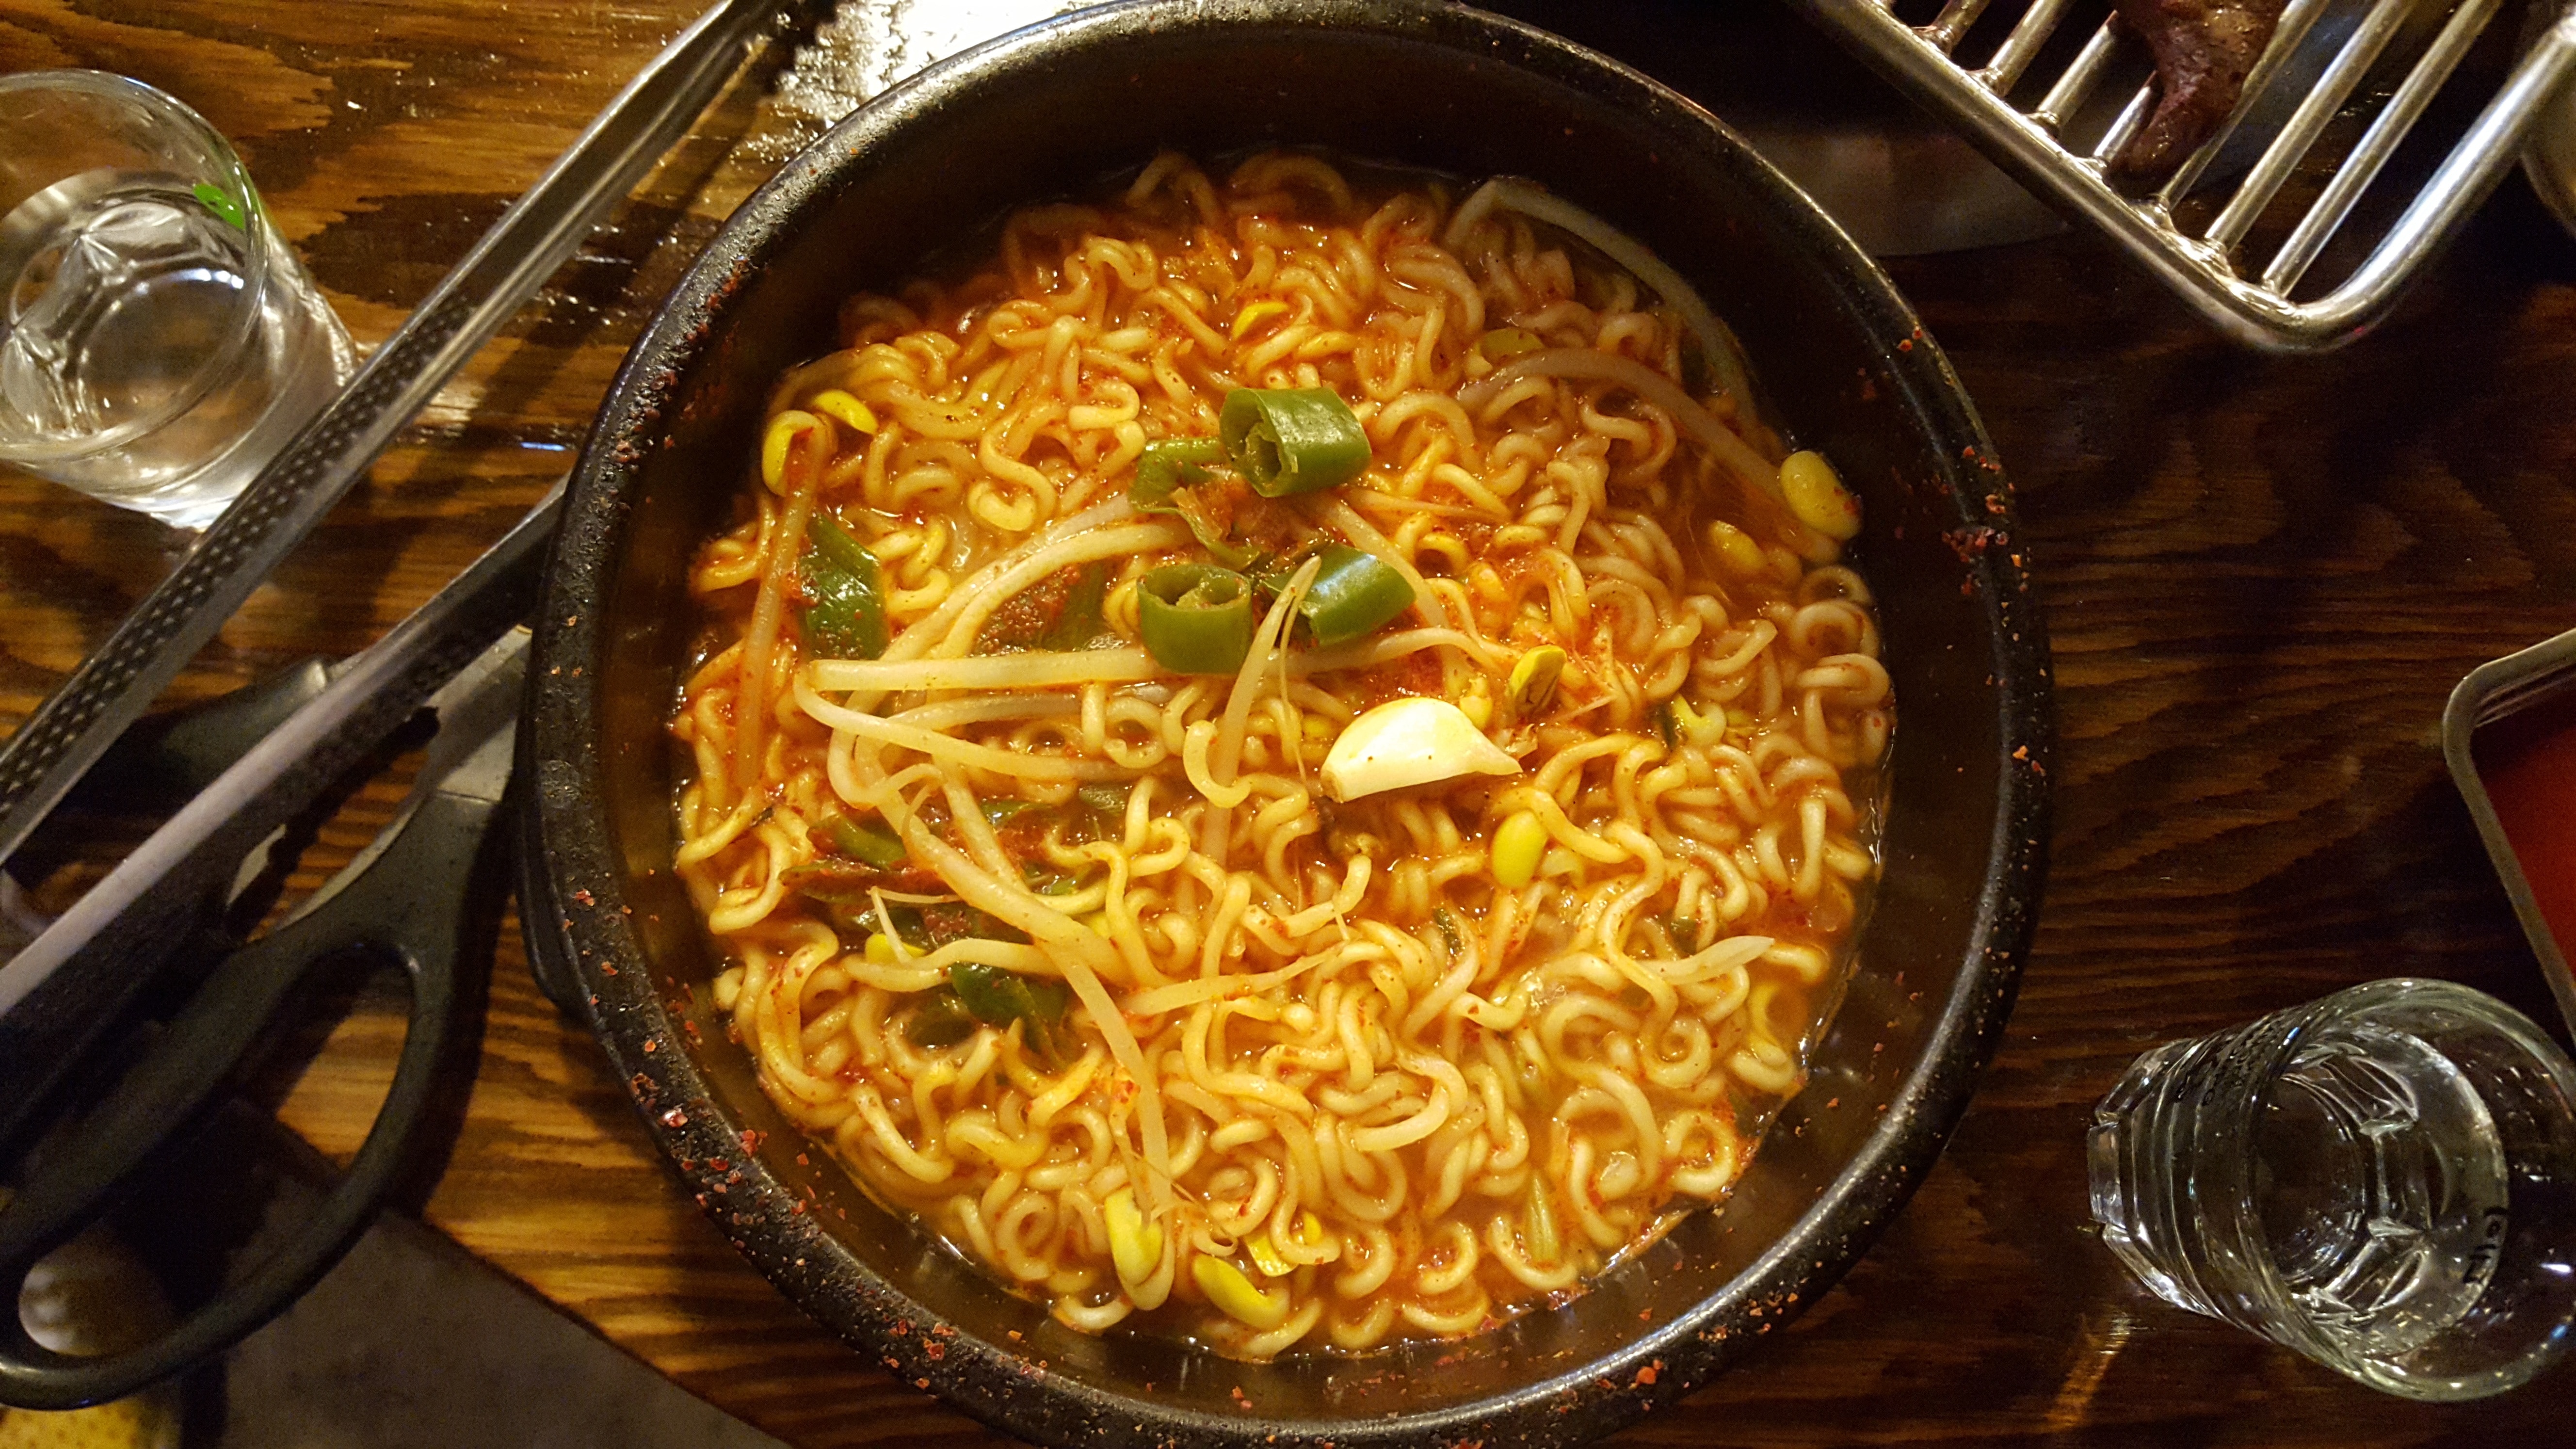 Заваривающаяся лапша. Рамён корейский. Корейская кухня рамен. Китайская лапша instant Noodle. Ramen Noodles быстрого приготовления.